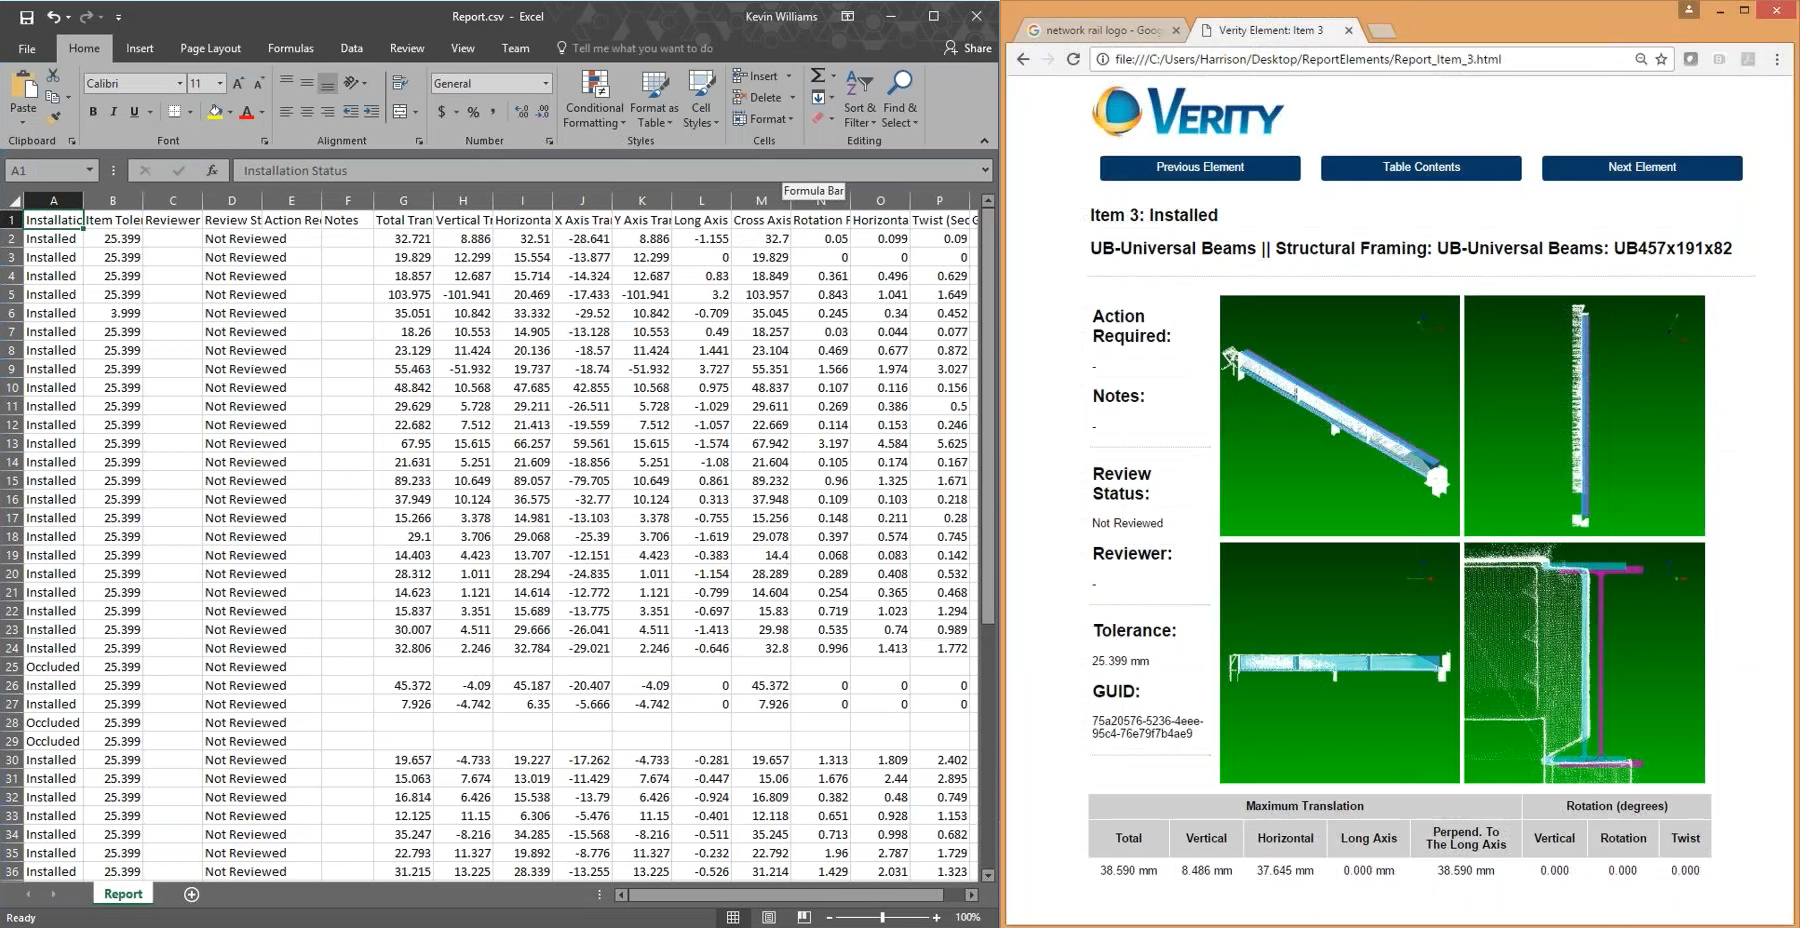 Les utilisateurs de Verity peuvent partager un rapport AQ/CQ avec les parties prenantes via le format CSV (à gauche) et HTML (à droite).